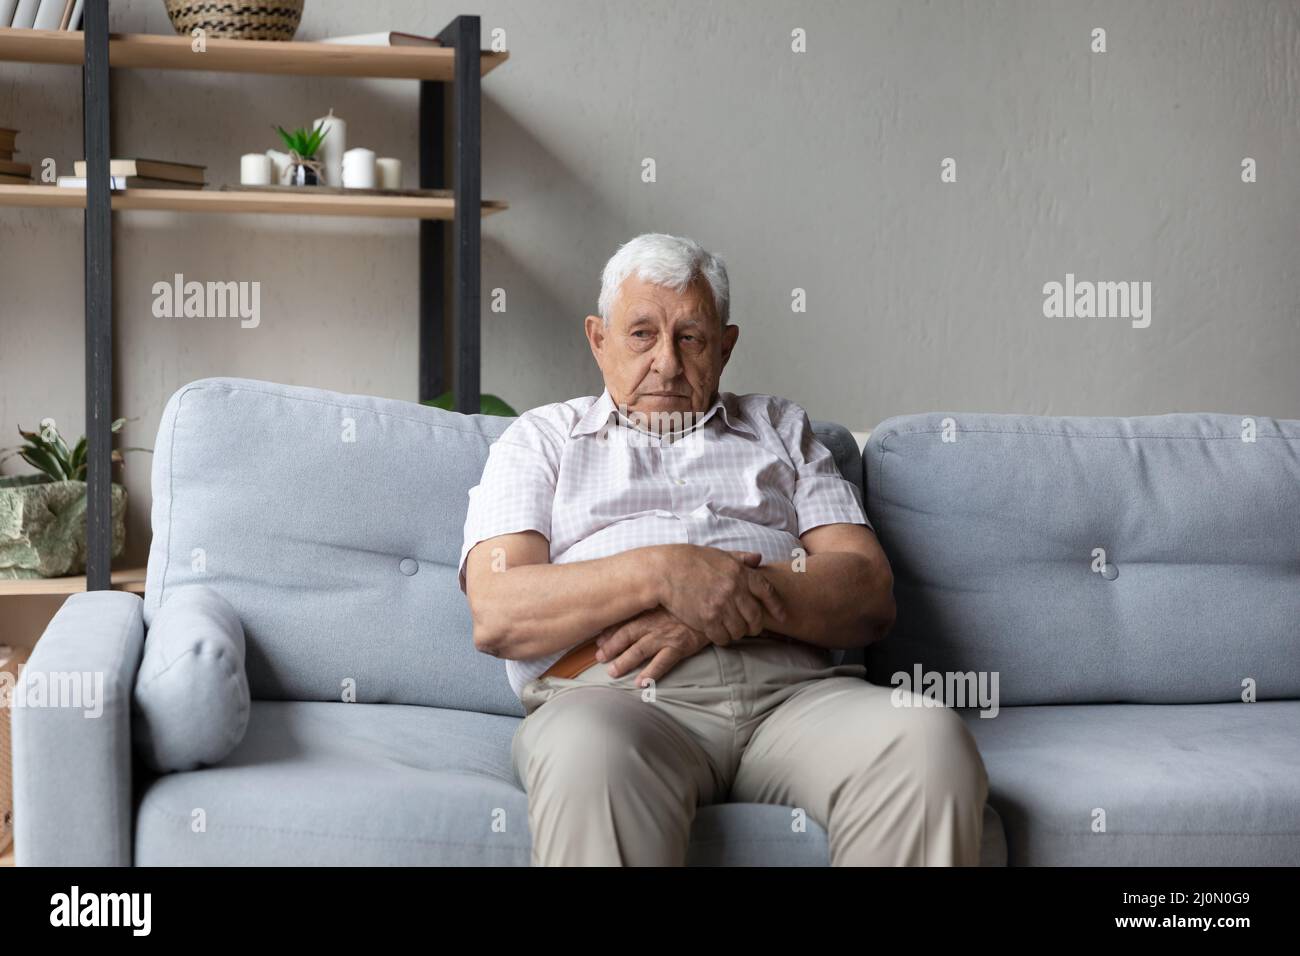 Un vieil homme attentionné s'assoit seul sur un canapé perdu dans ses pensées Banque D'Images